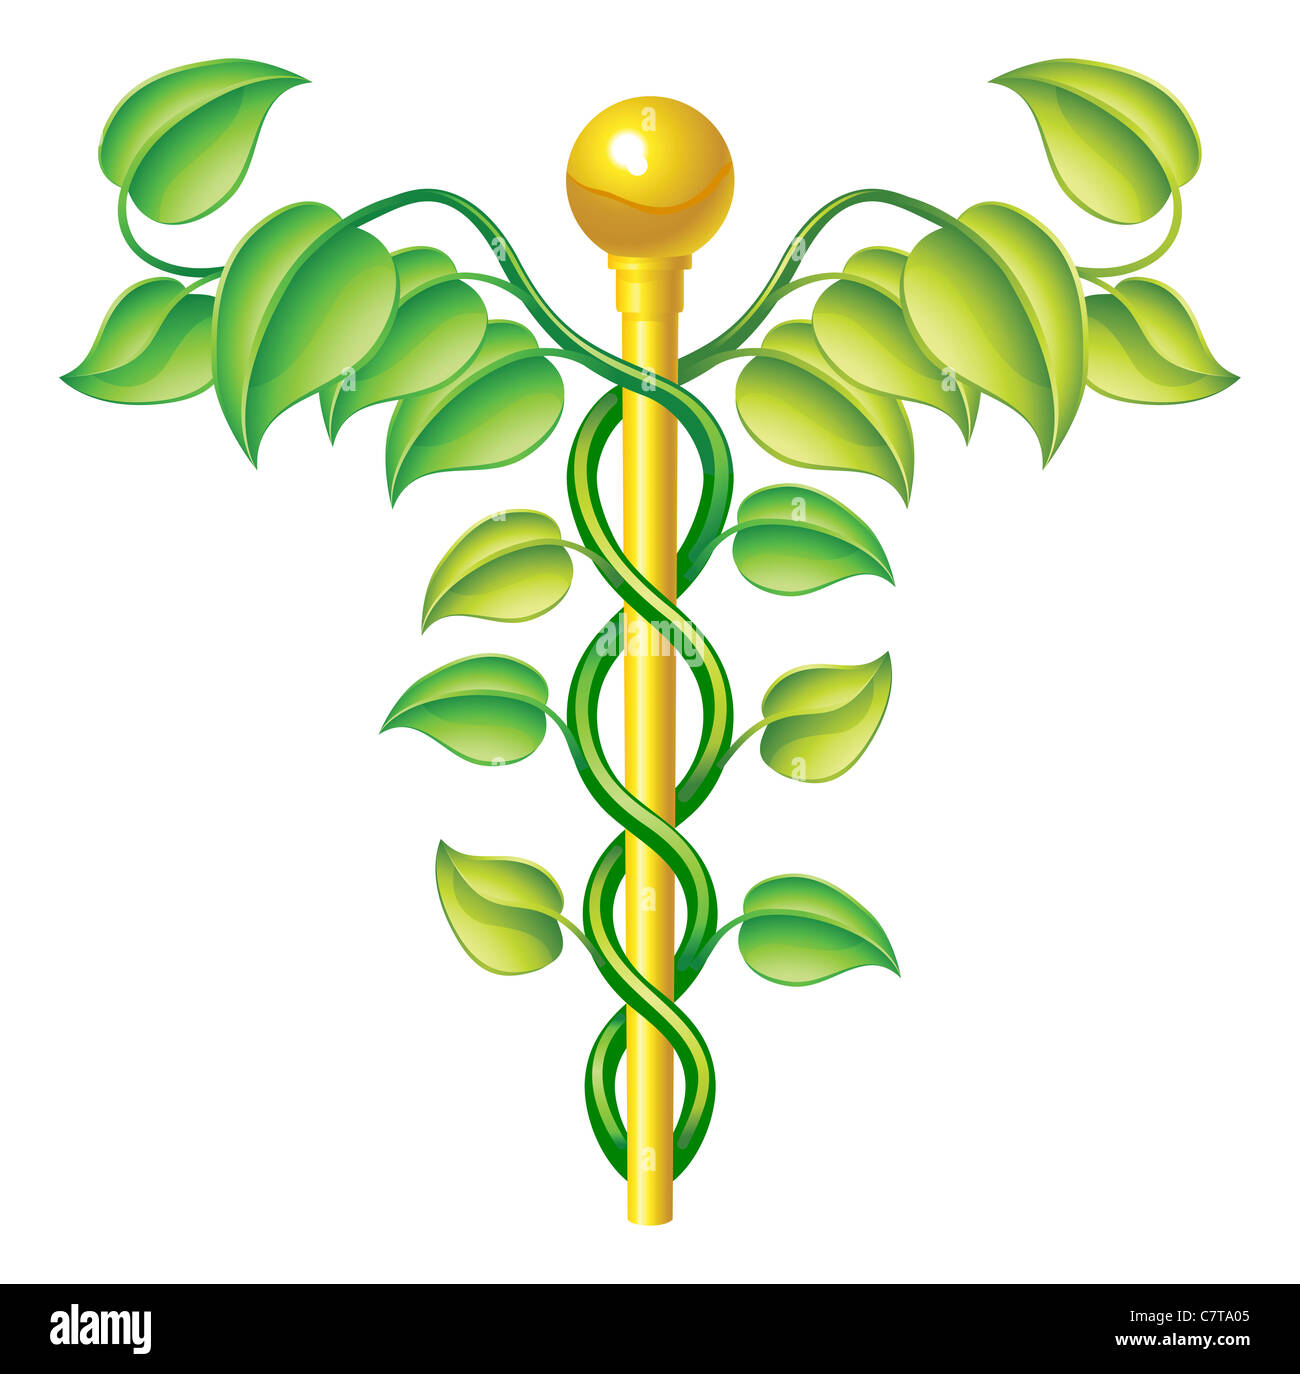 Natürliche Caduceus Konzept werden für natürliche oder alternative Medizin etc. eingesetzt. Stockfoto